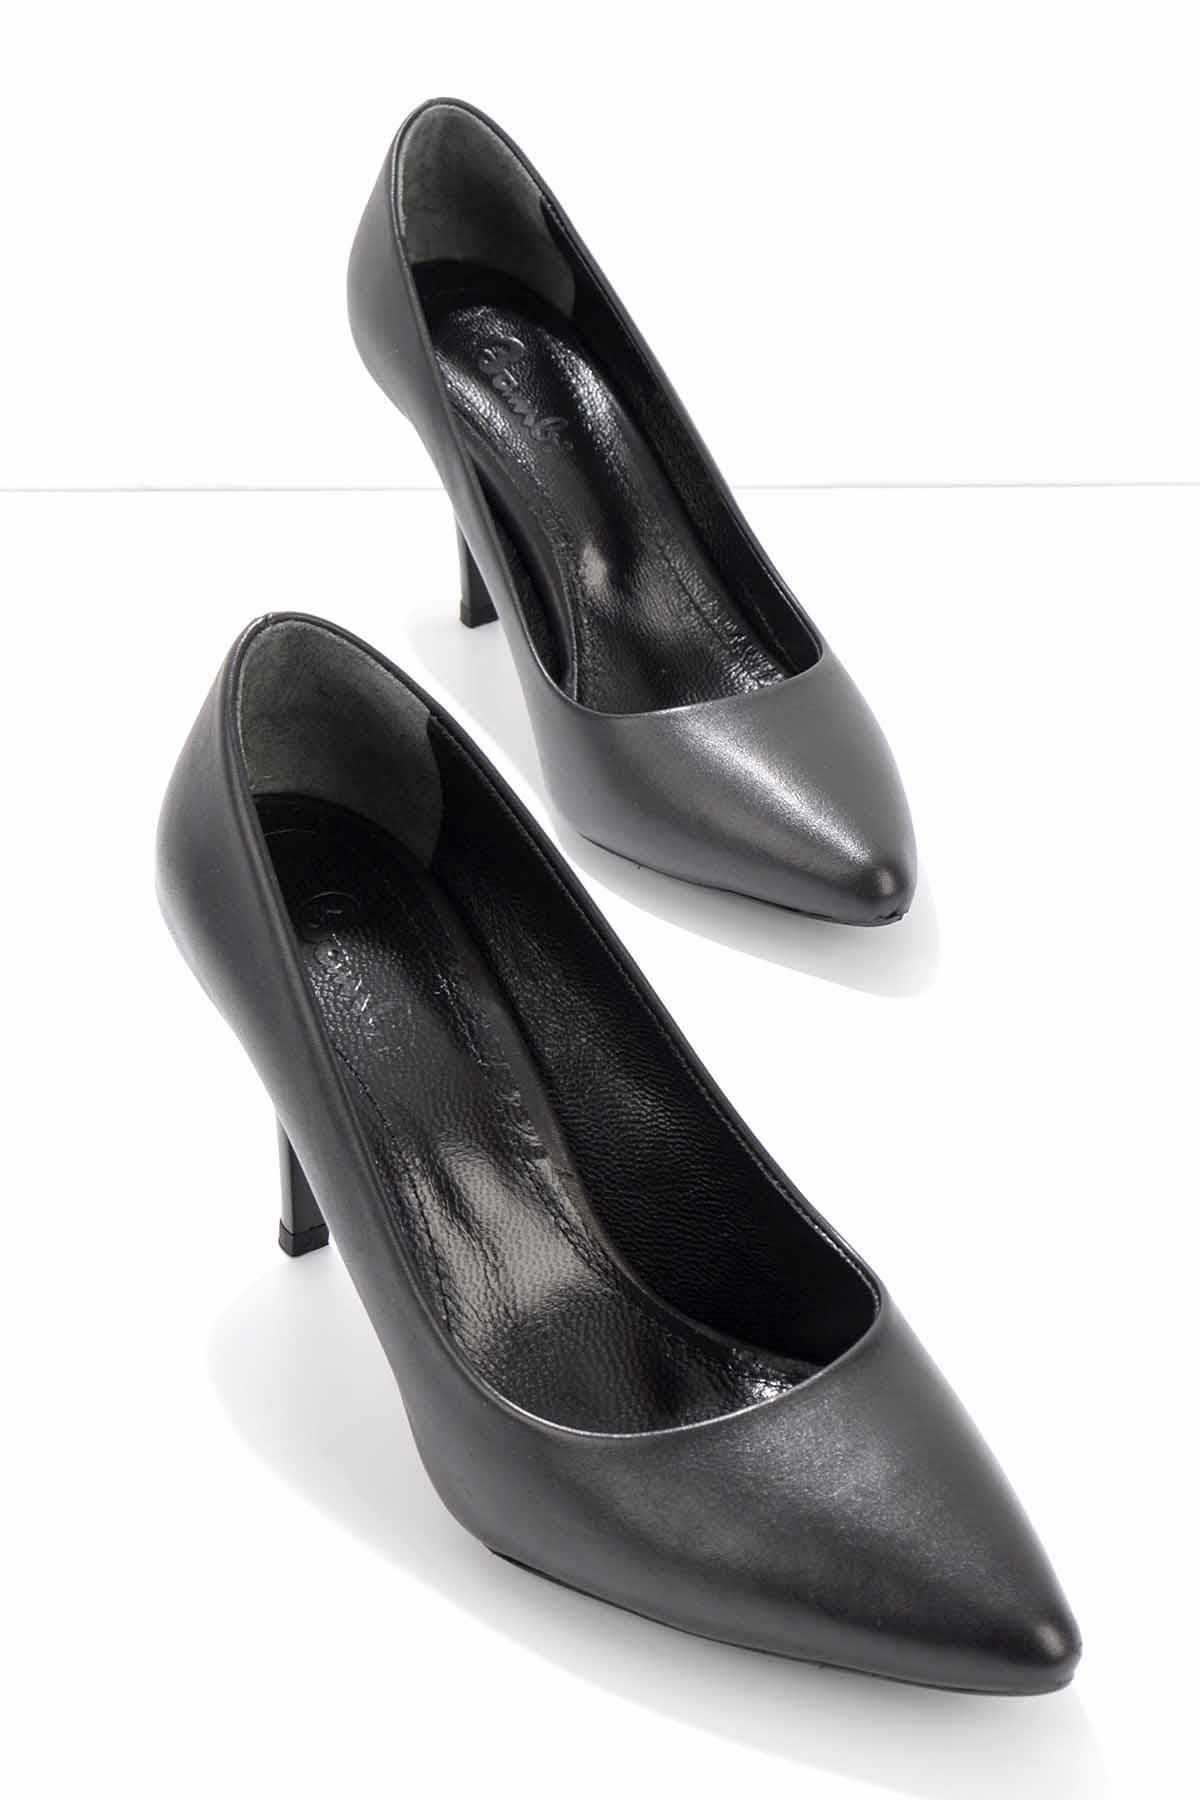 Bambi Siyah Hakiki Deri Kadın Klasik Topuklu Ayakkabı K01264400403